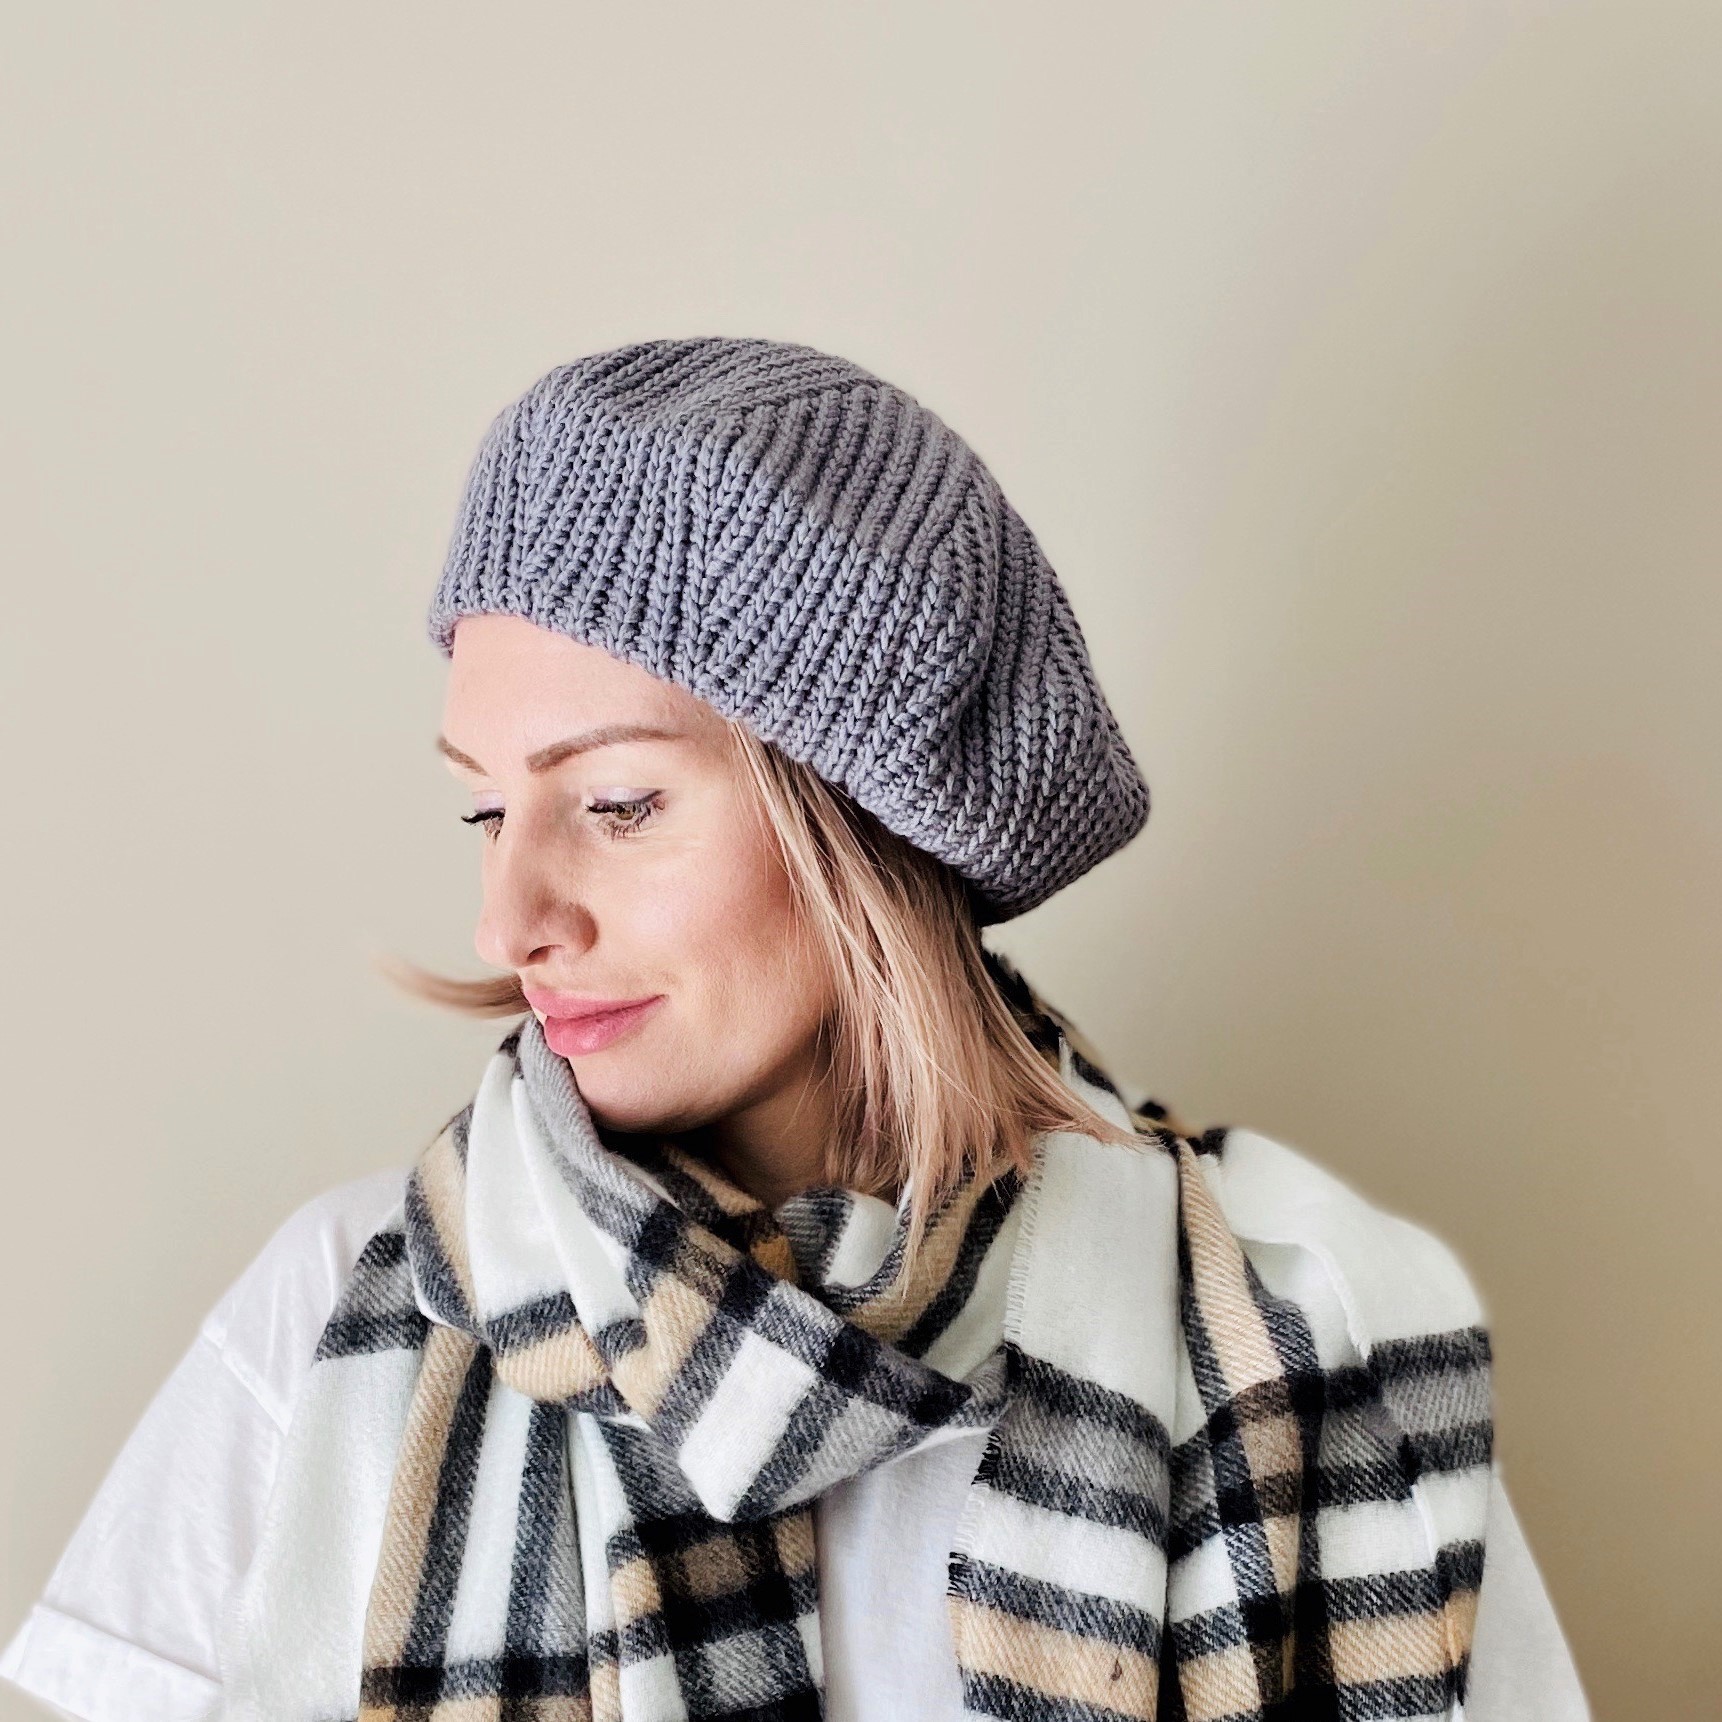 Шапки крючком 2021 | модные вязаные шапки береты крючком для жен�щин